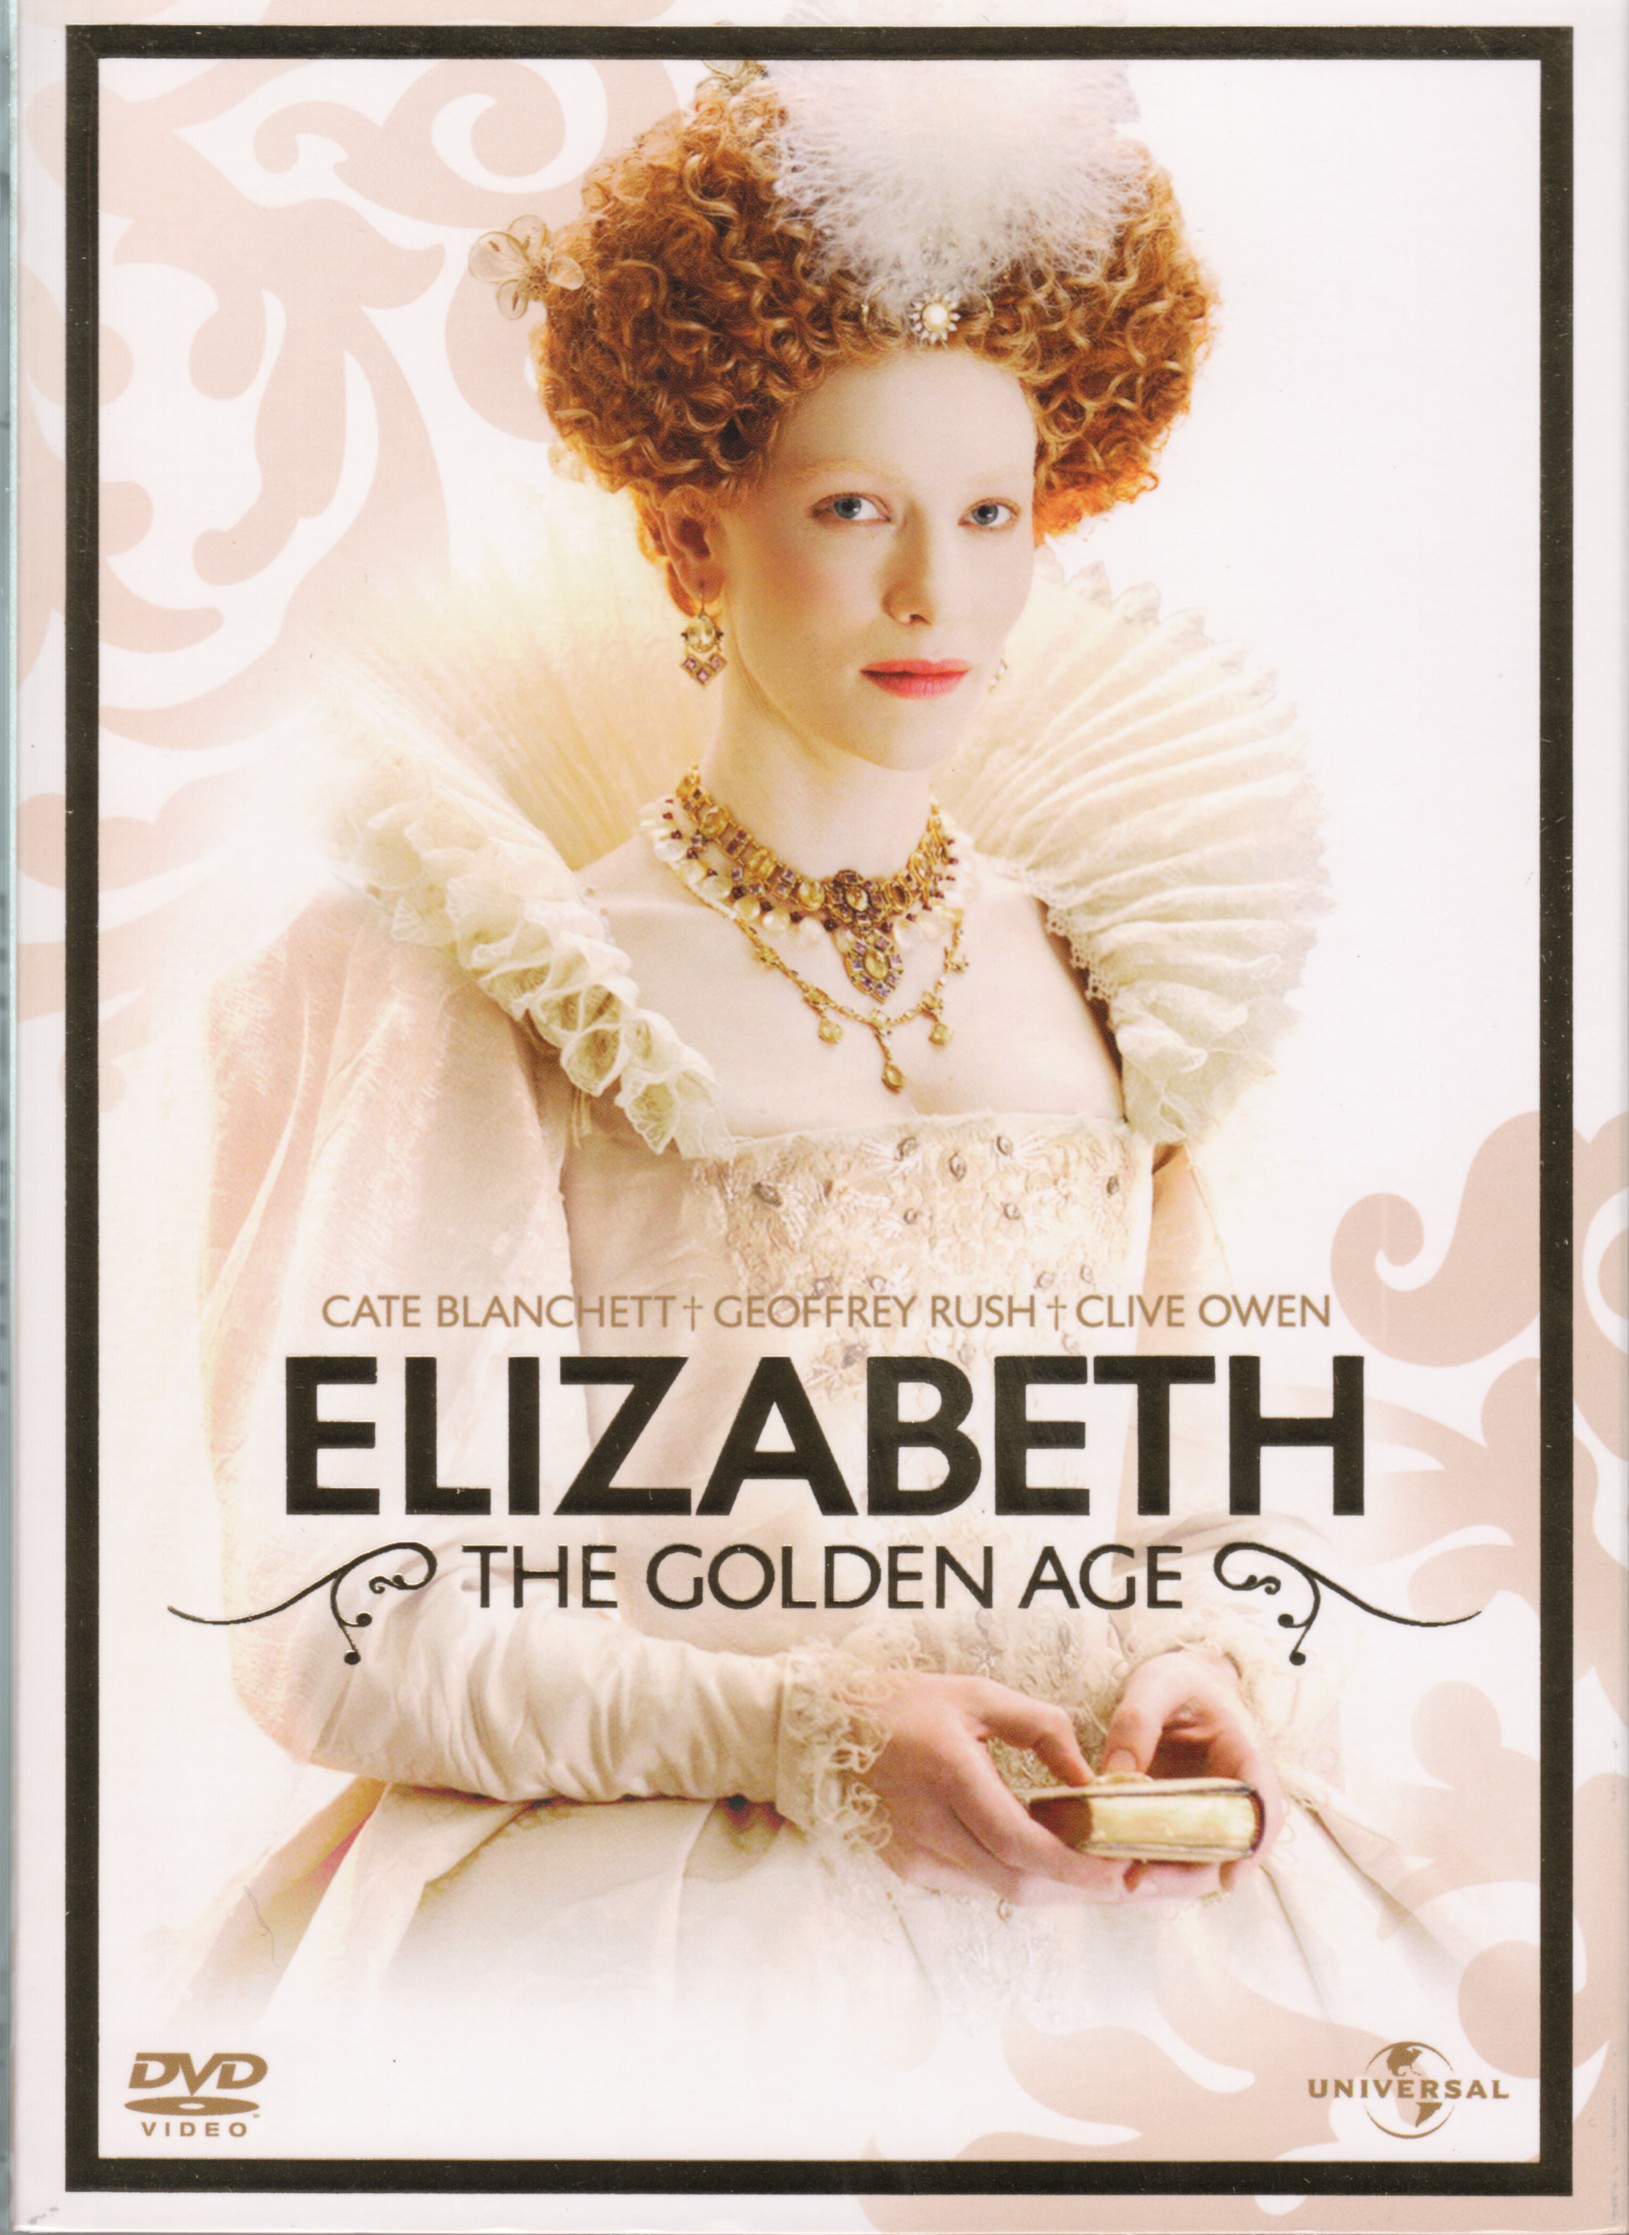 Elizabeth, the golden age